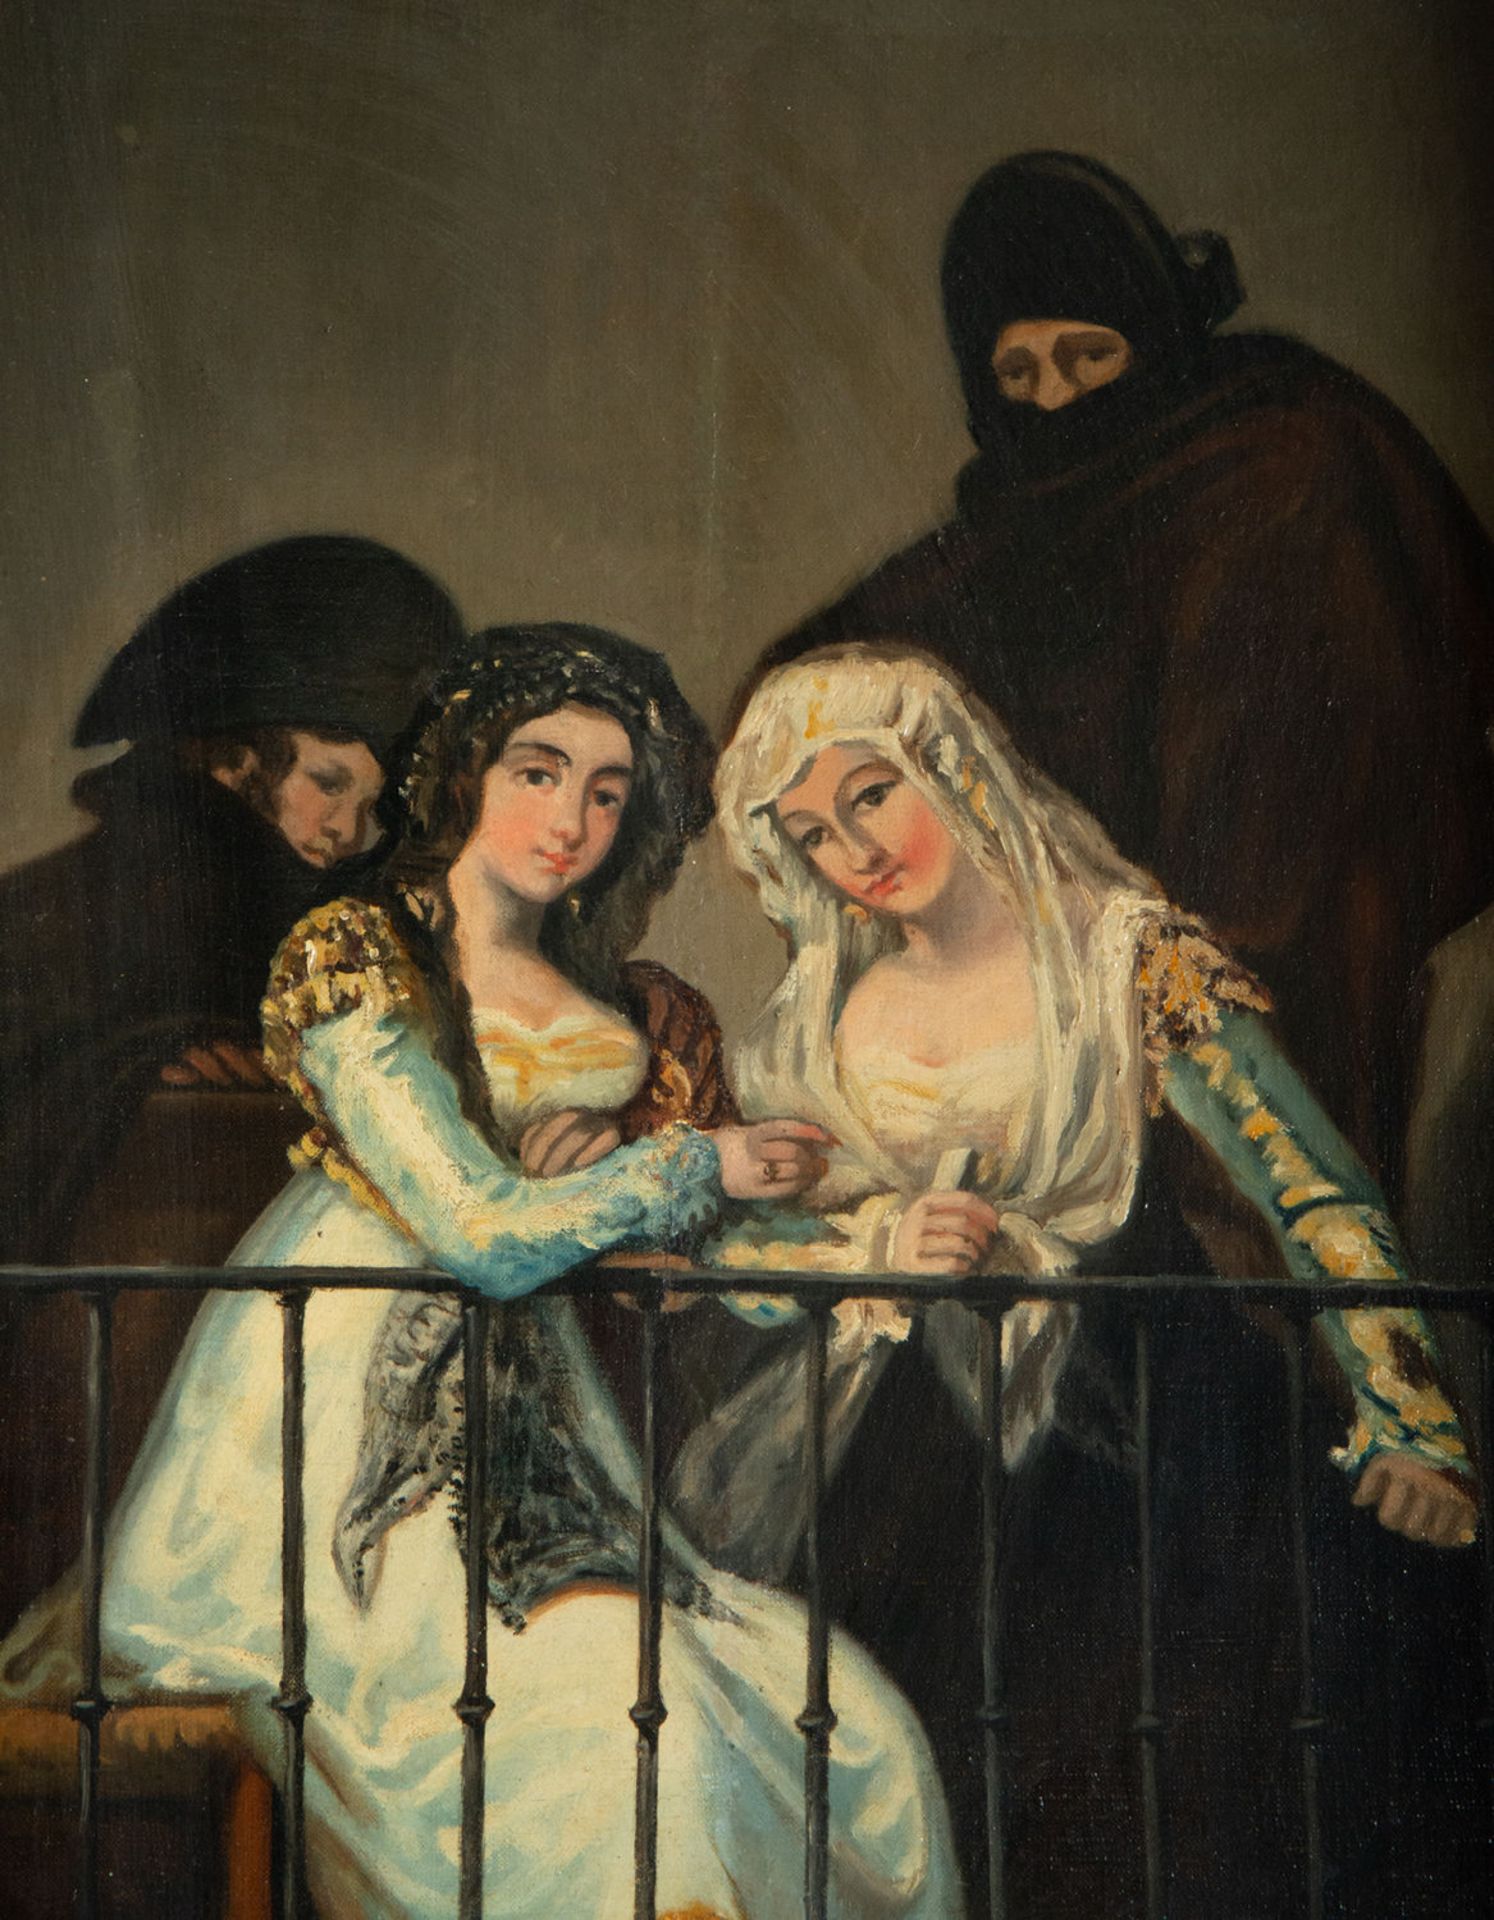 Las "Majas" on the Balcony, after Francisco de Goya y Lucientes, 19th century Spanish school - Image 4 of 4